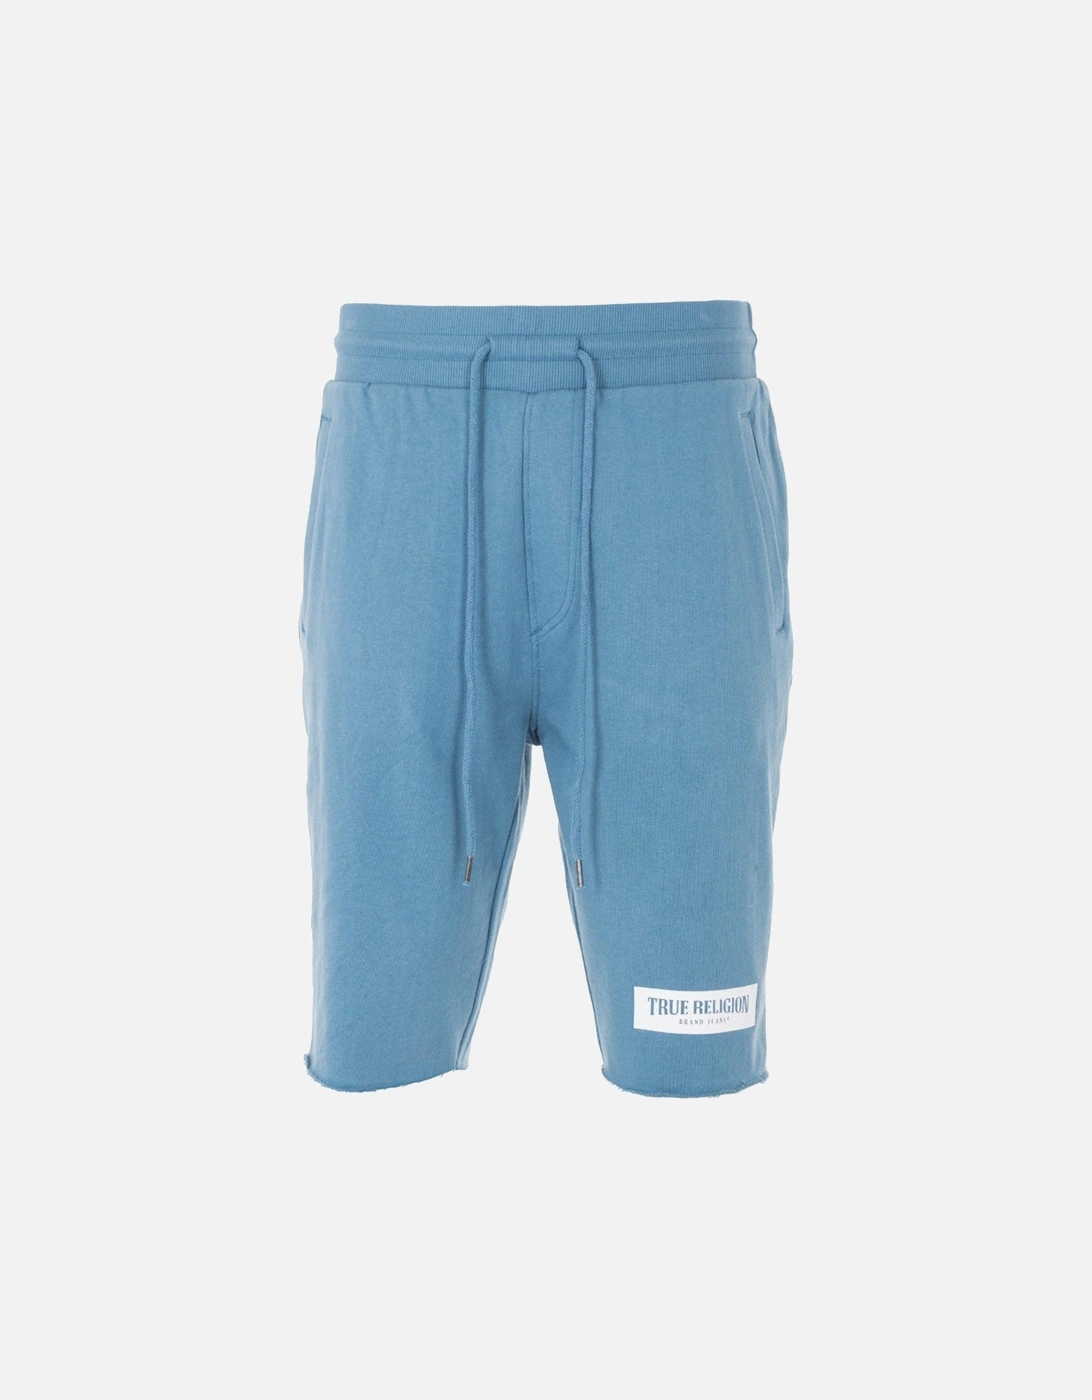 welt Pocket Shorts Blue, 5 of 4